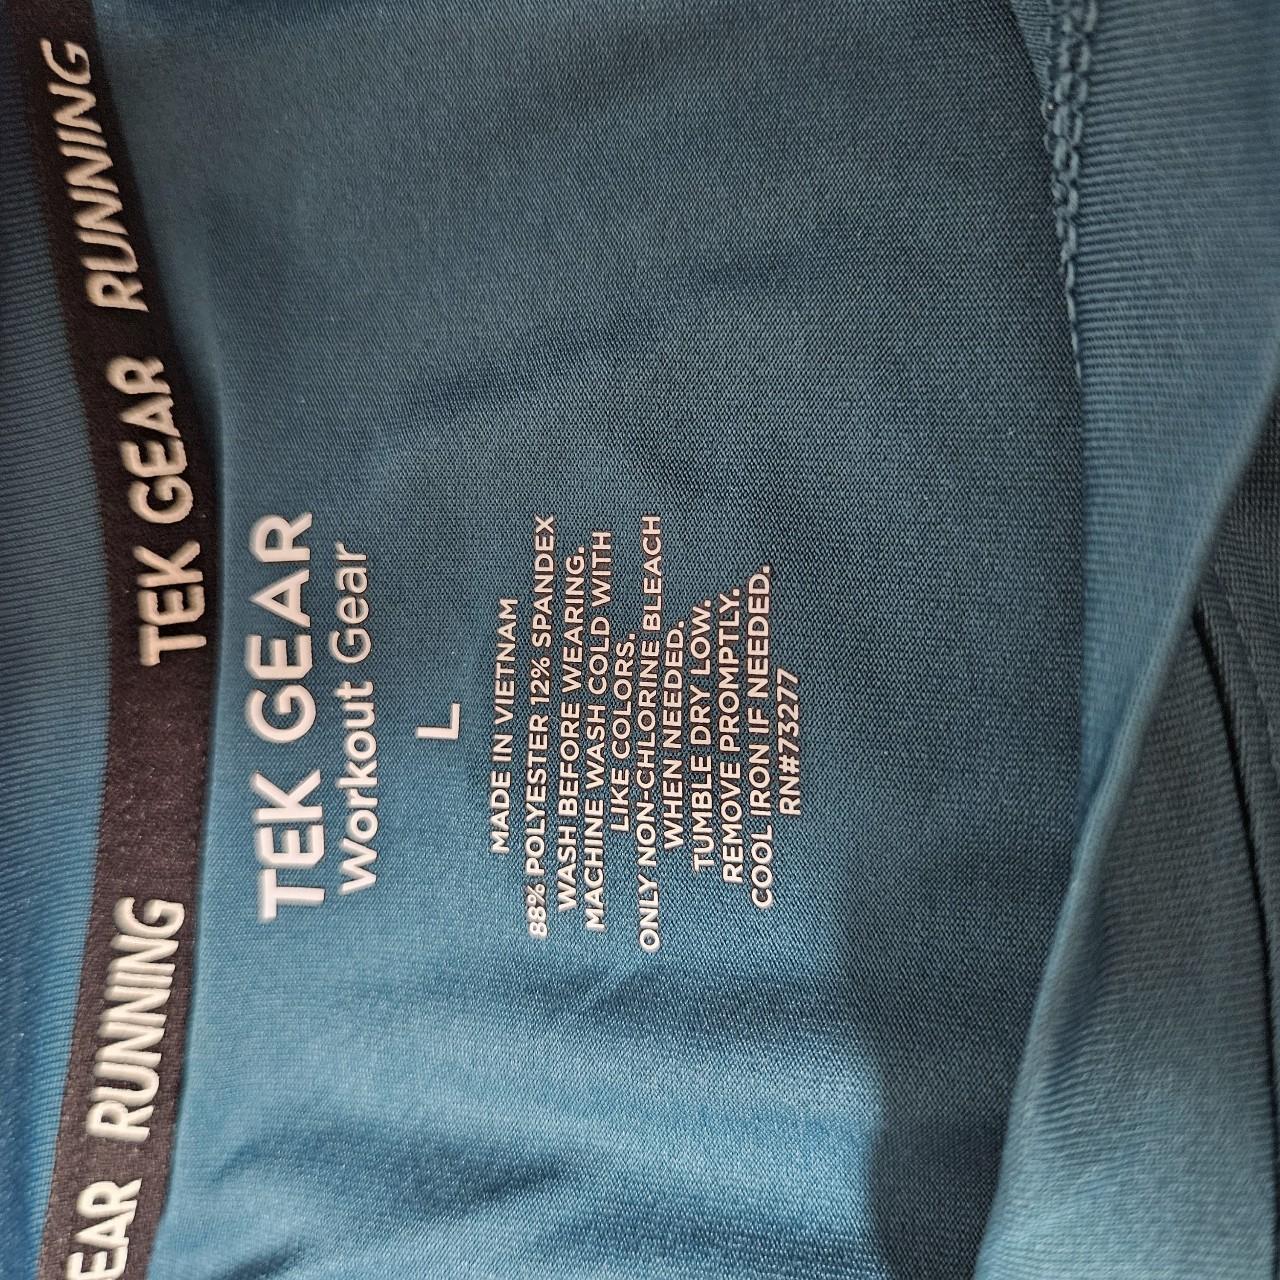 Tek Gear womens large running shirt. Reflective mark - Depop